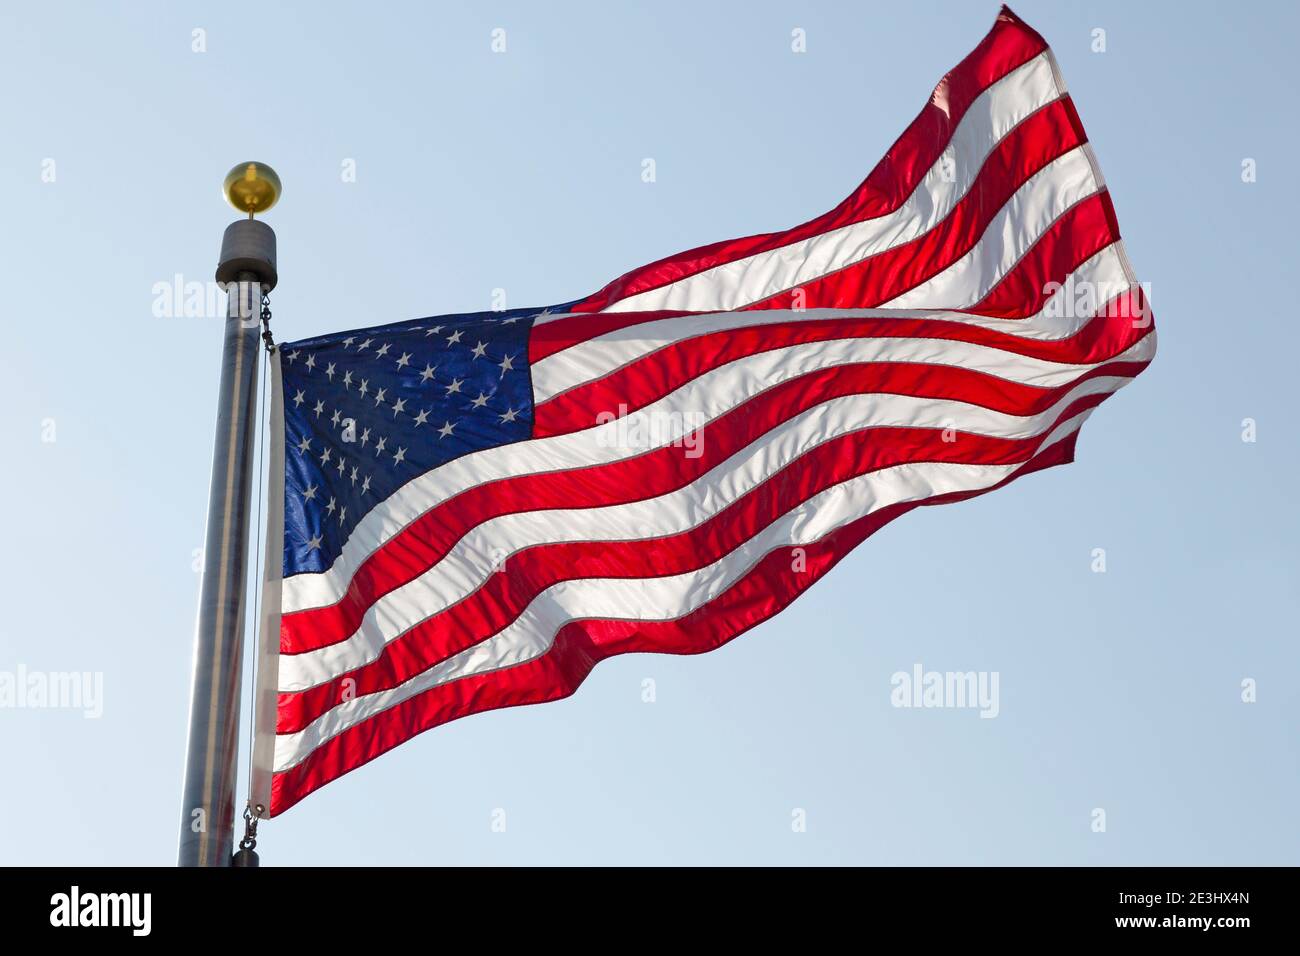 Drapeau américain volant à Washington DC, États-Unis. Le drapeau national est connu sous le nom de Old Glory, The Stars and Stripes et la bannière Star-Spangled. Banque D'Images